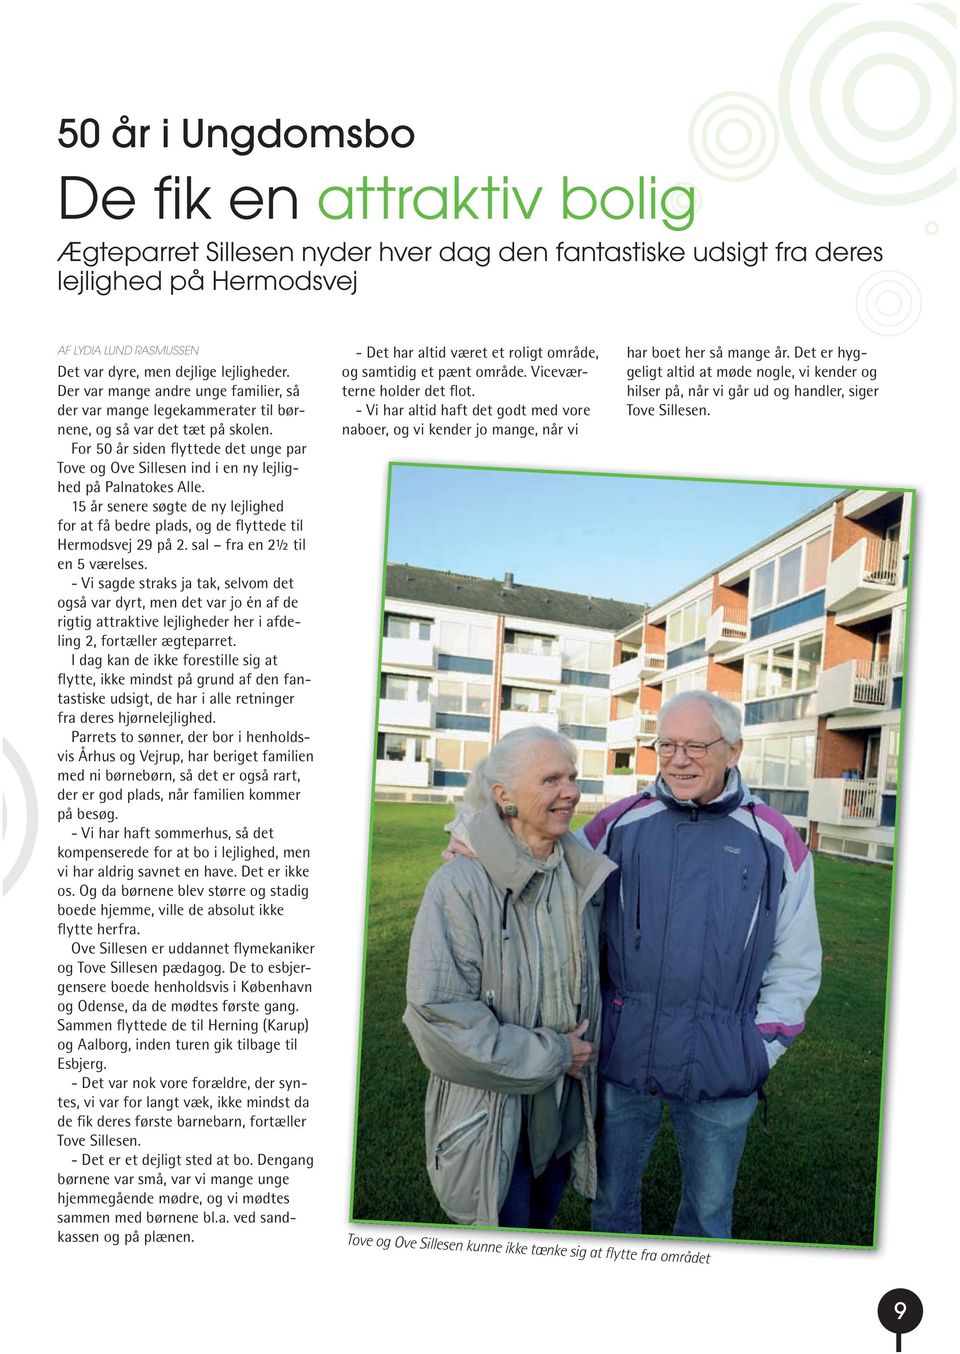 For 50 år siden flyttede det unge par Tove og Ove Sillesen ind i en ny lejlighed på Palnatokes Alle. 15 år senere søgte de ny lejlighed for at få bedre plads, og de flyttede til Hermodsvej 29 på 2.